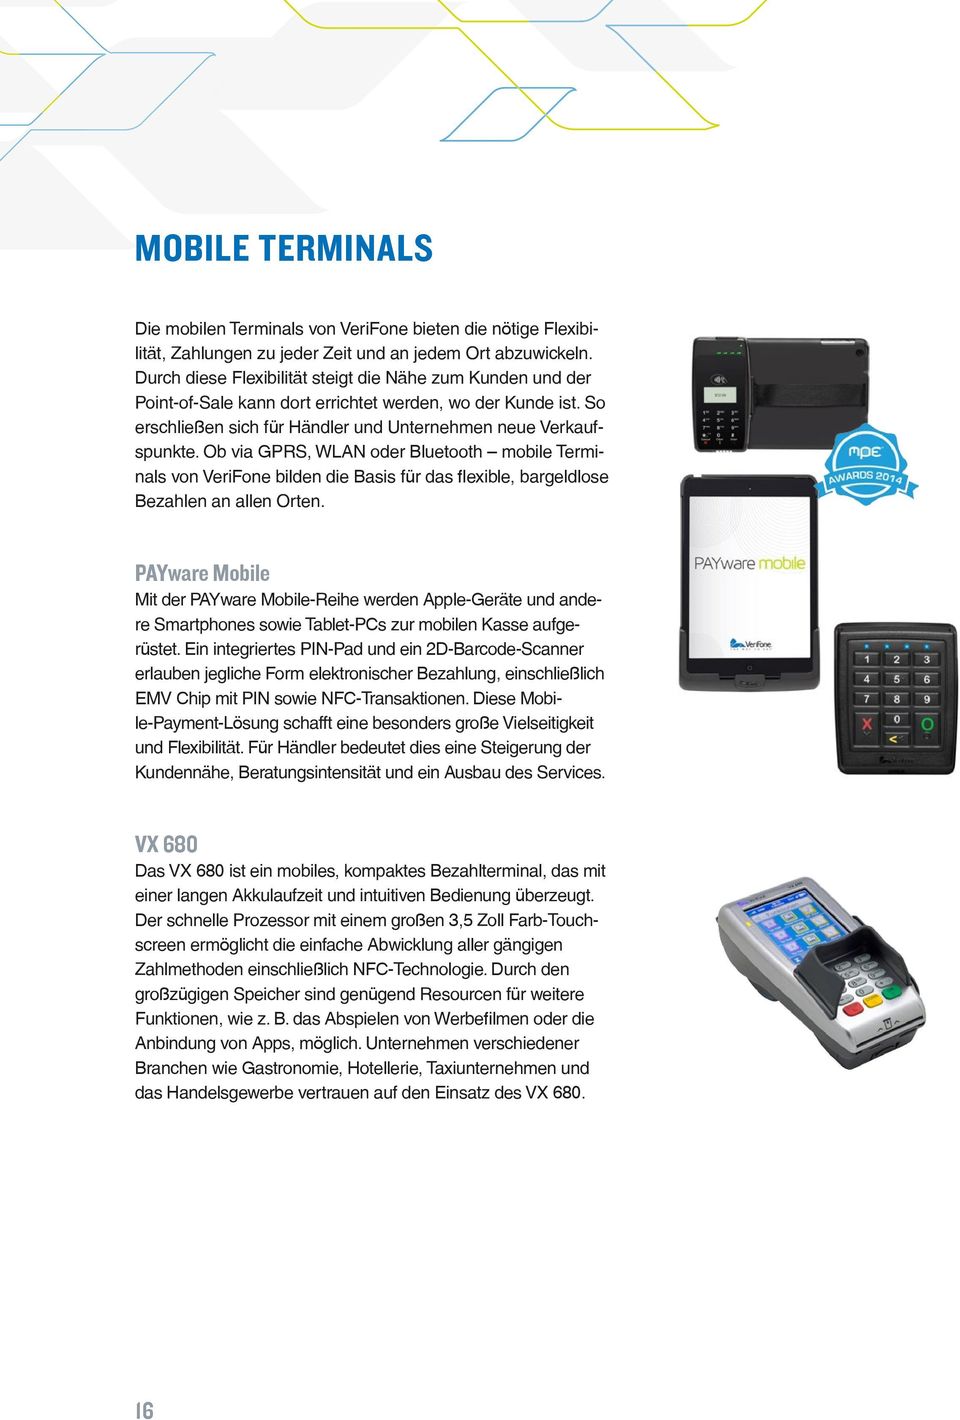 Ob via GPRS, WLAN oder Bluetooth mobile Terminals von VeriFone bilden die Basis für das flexible, bargeldlose Bezahlen an allen Orten.